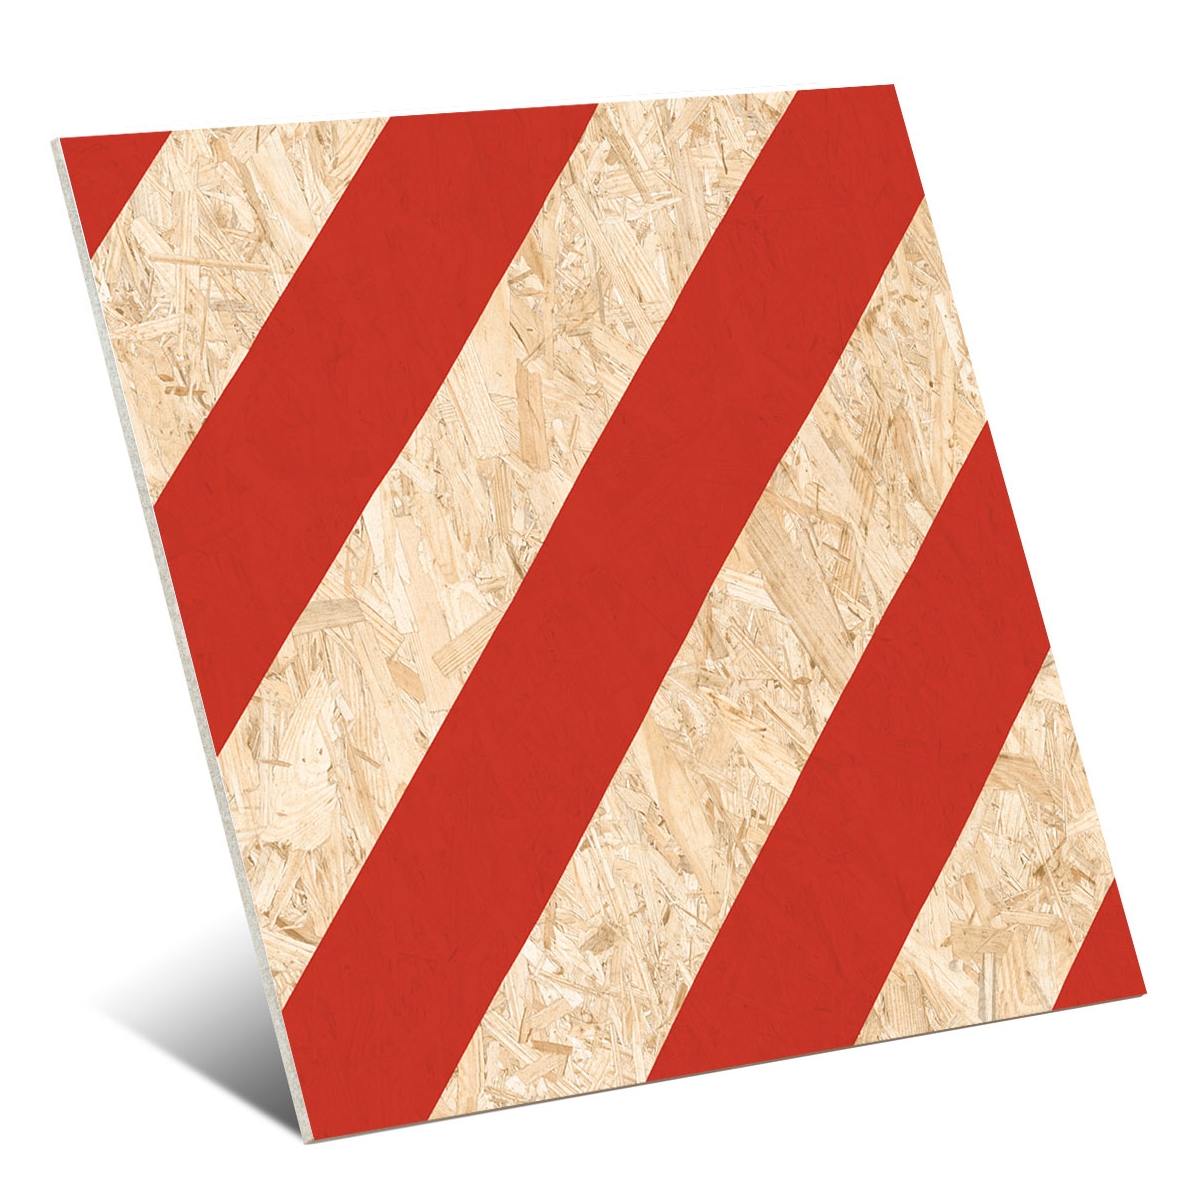 Pavimentos imitación madera Vives - Nenets Natural Rojo Rectificado 59,3x59,3 cm (caja 1,05 m2)